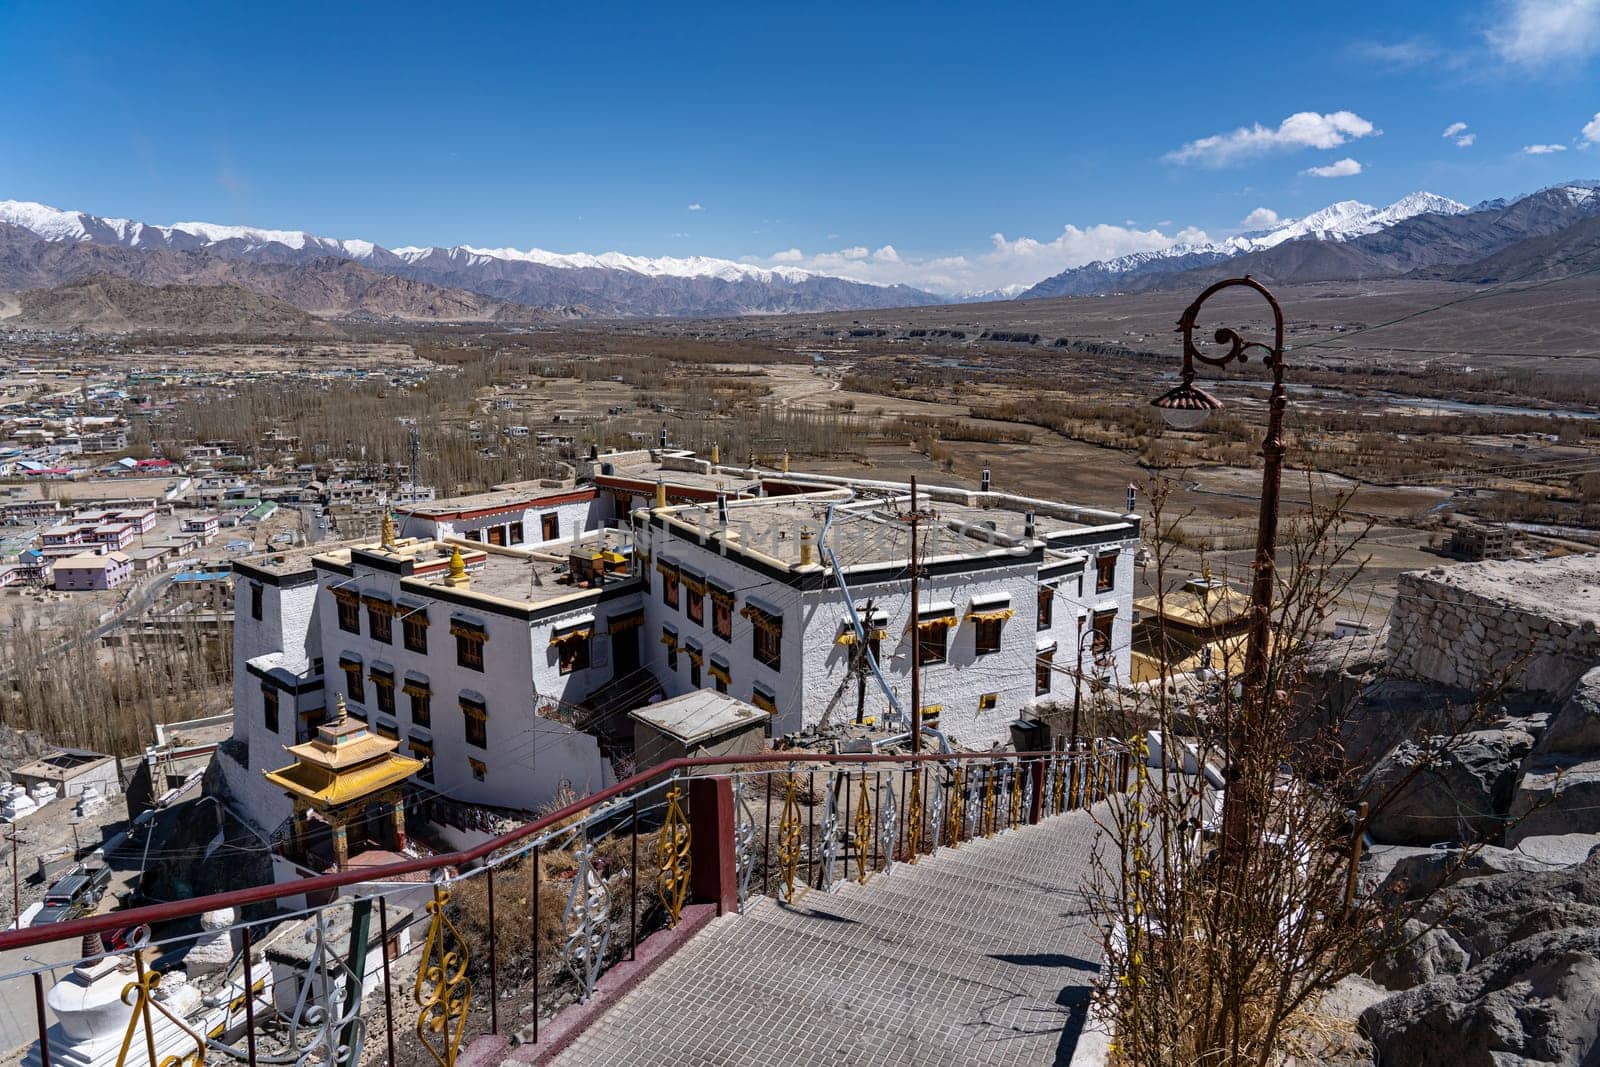 Spituk Monastery in Leh, Ladakh by oliverfoerstner